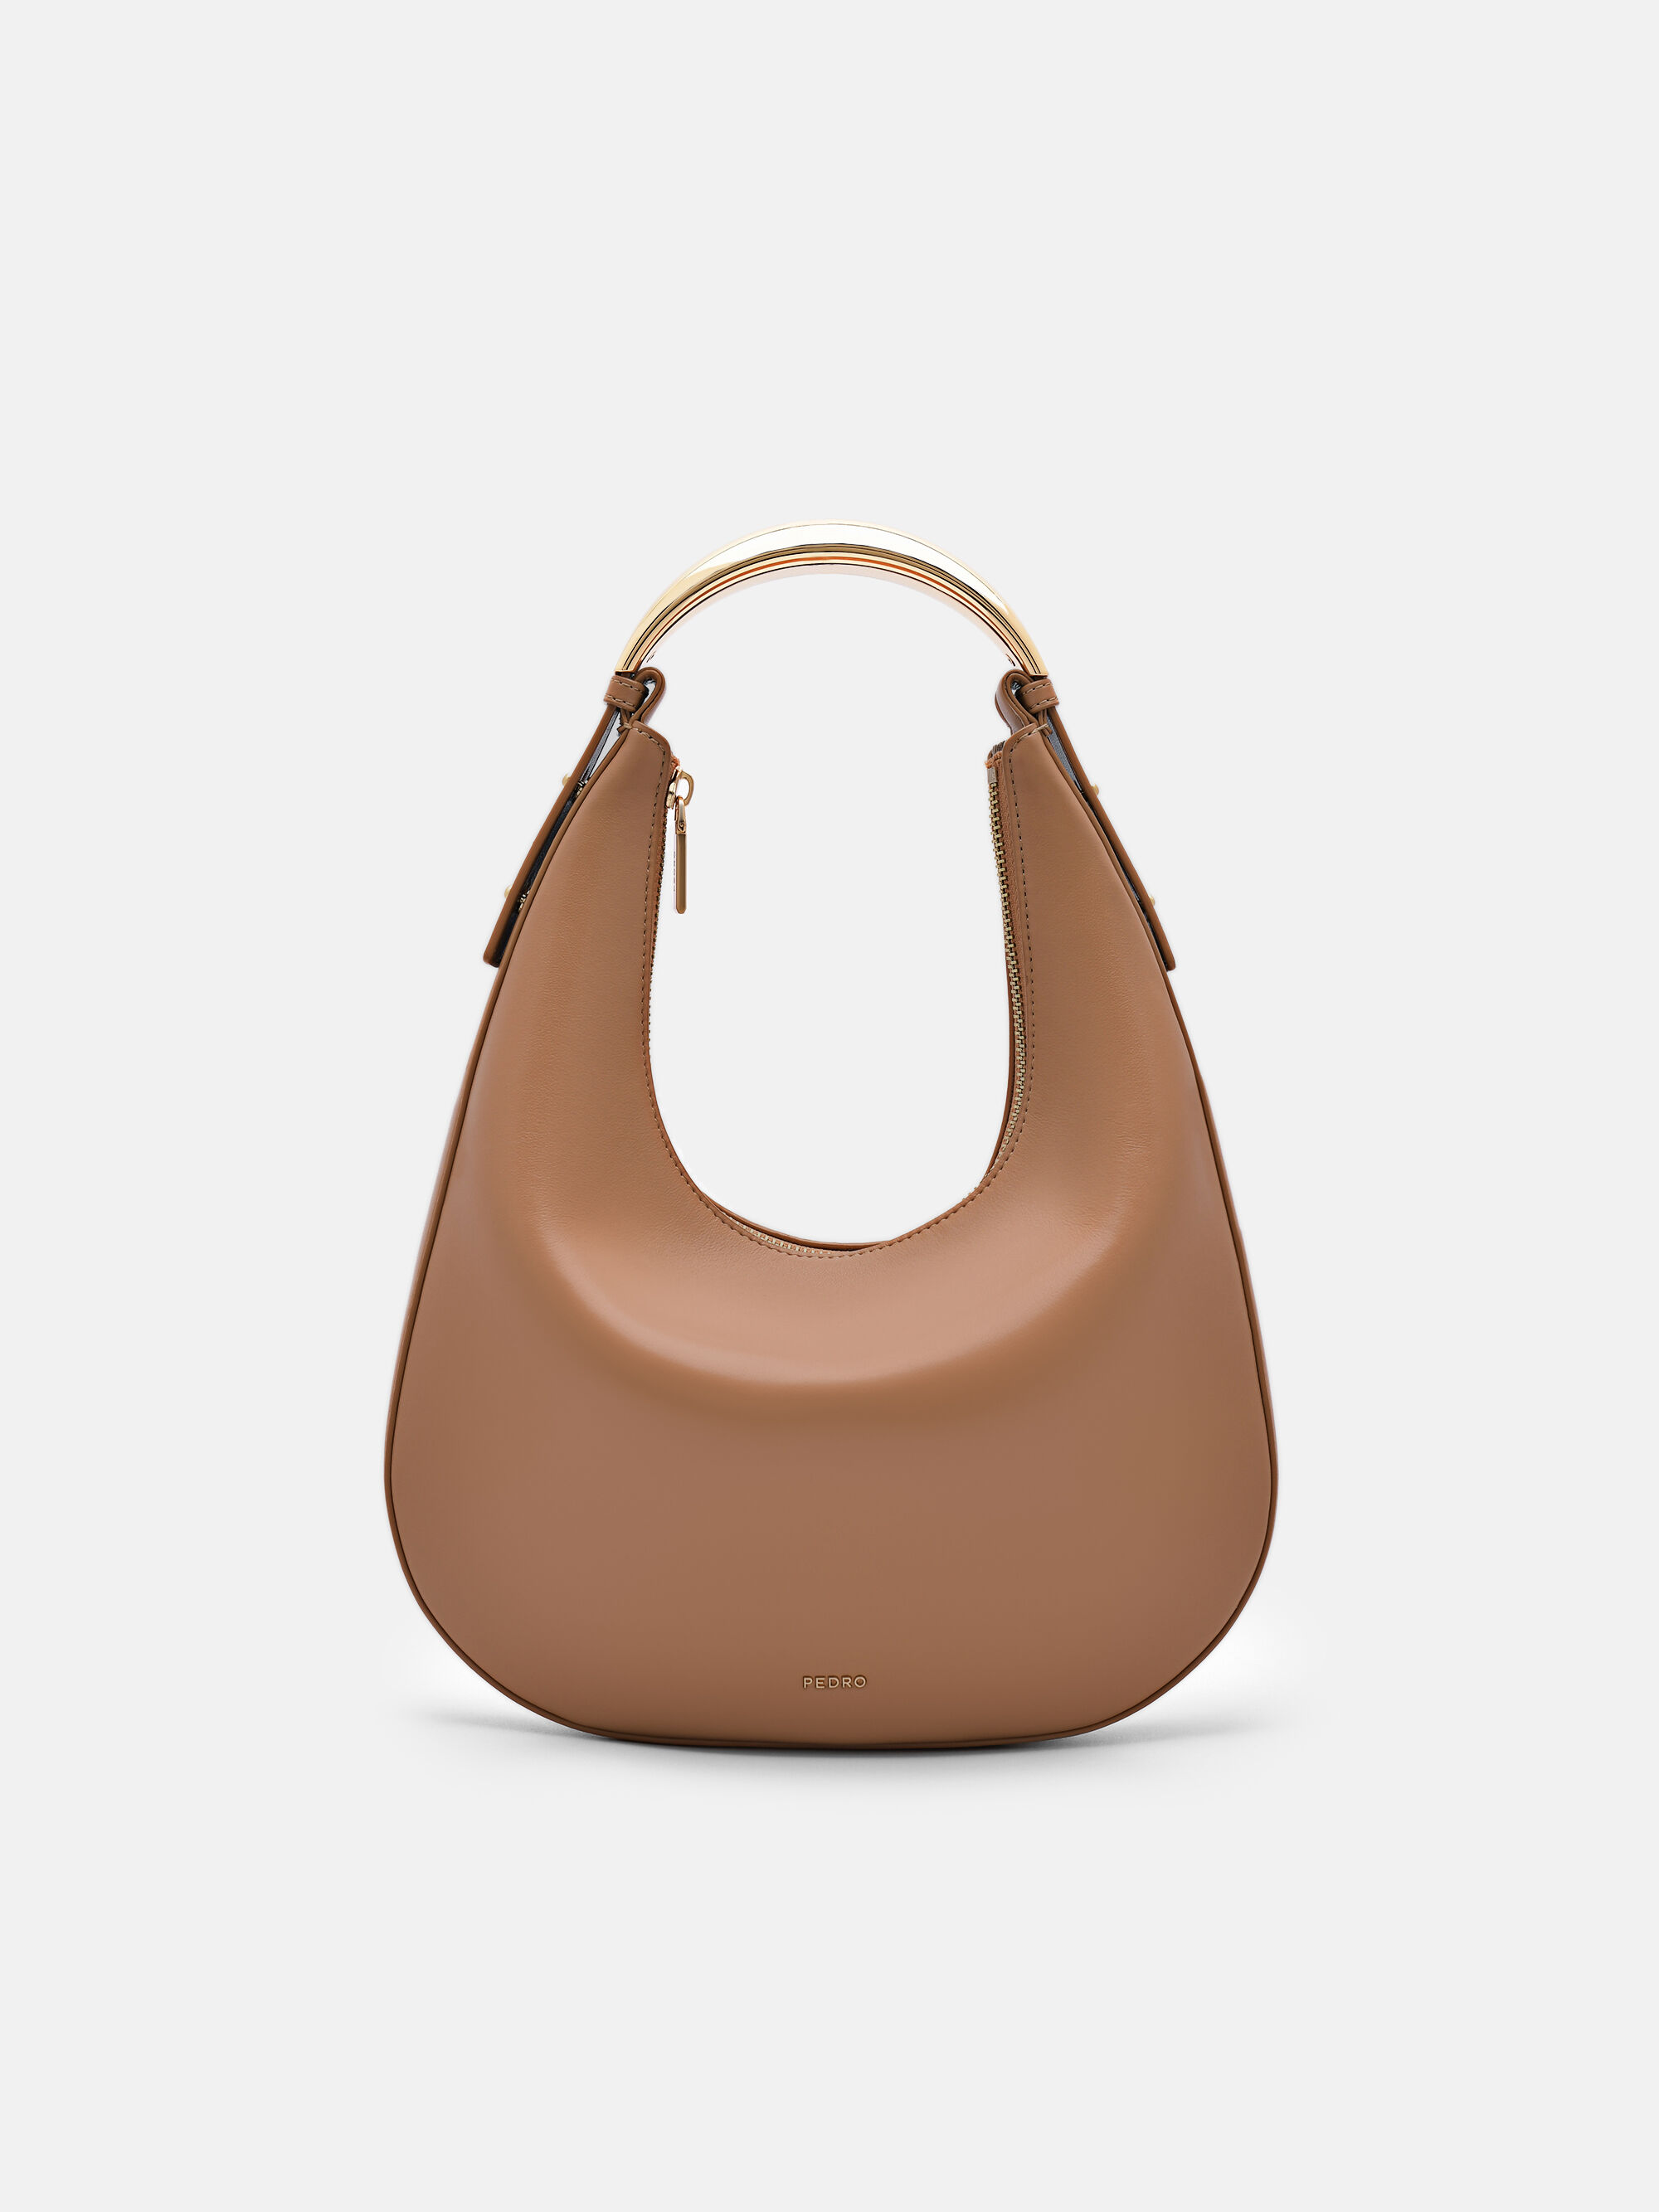 BALENCIAGA | Medium Locker Leather Hobo Bag | Women | Lane Crawford